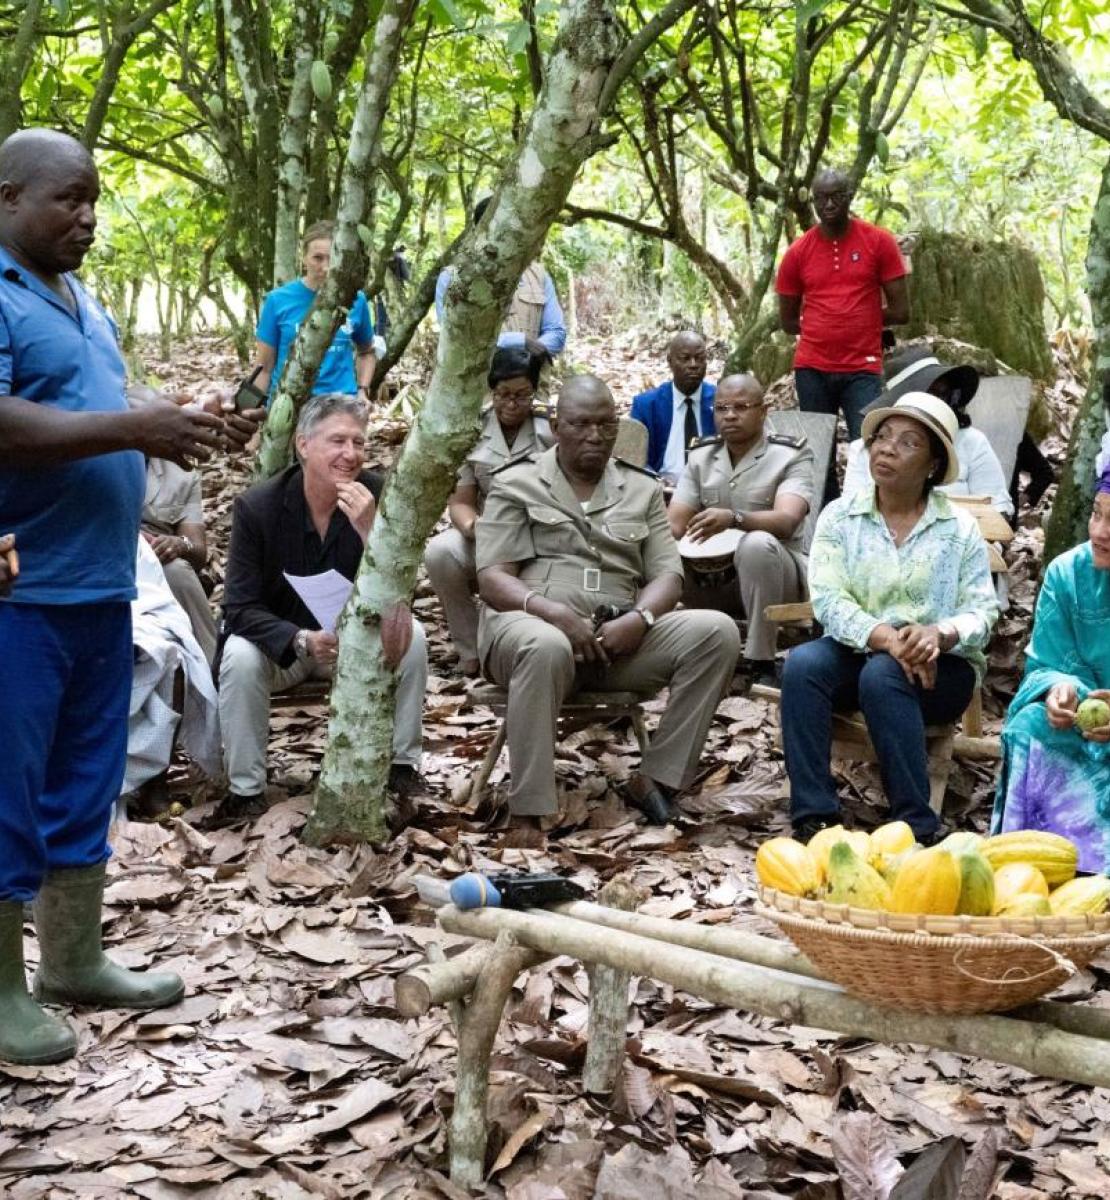 La Vicesecretaria General de las Naciones Unidas habla con agricultores de cacao en un "Champ-École" ("Proyecto de formación agrícola") en Kouakoukoro, Soubré, Côte d'Ivoire.